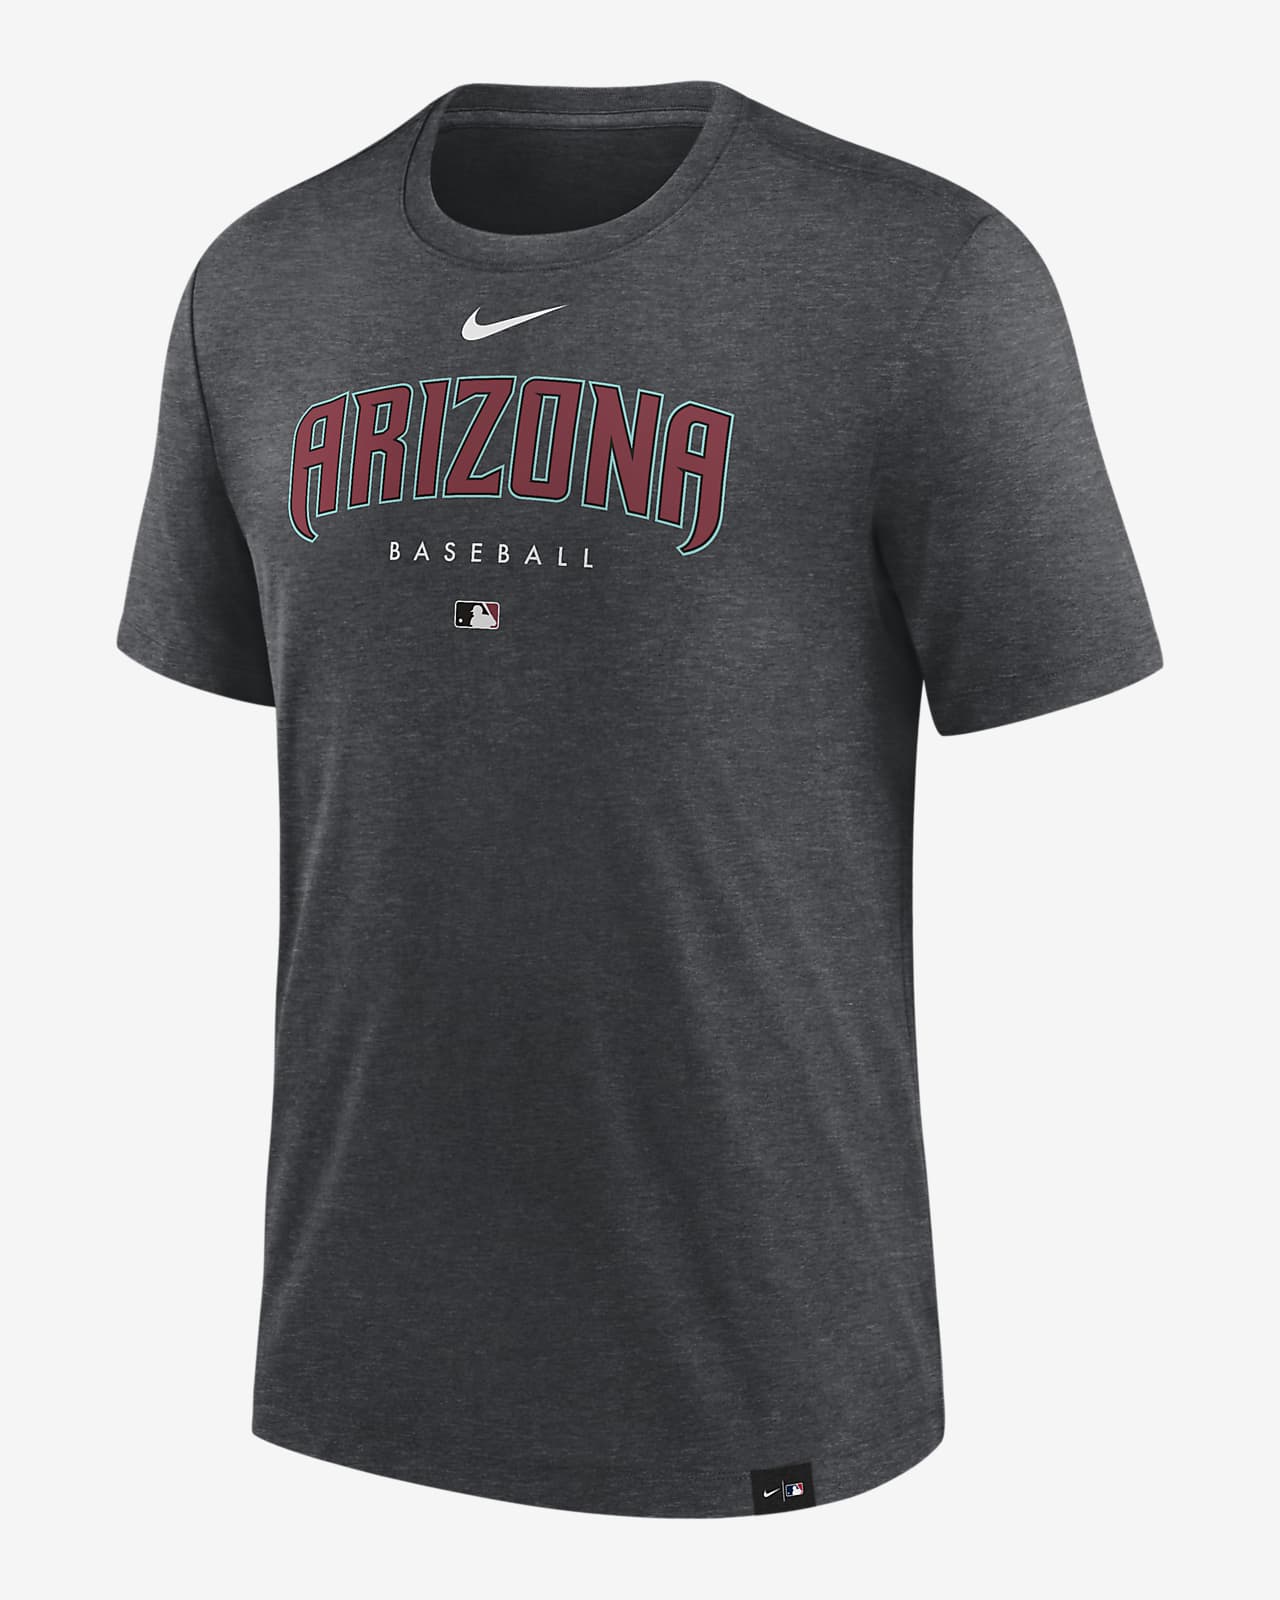 MLB Arizona Diamondbacks Mix jersey Personalized Style Polo Shirt